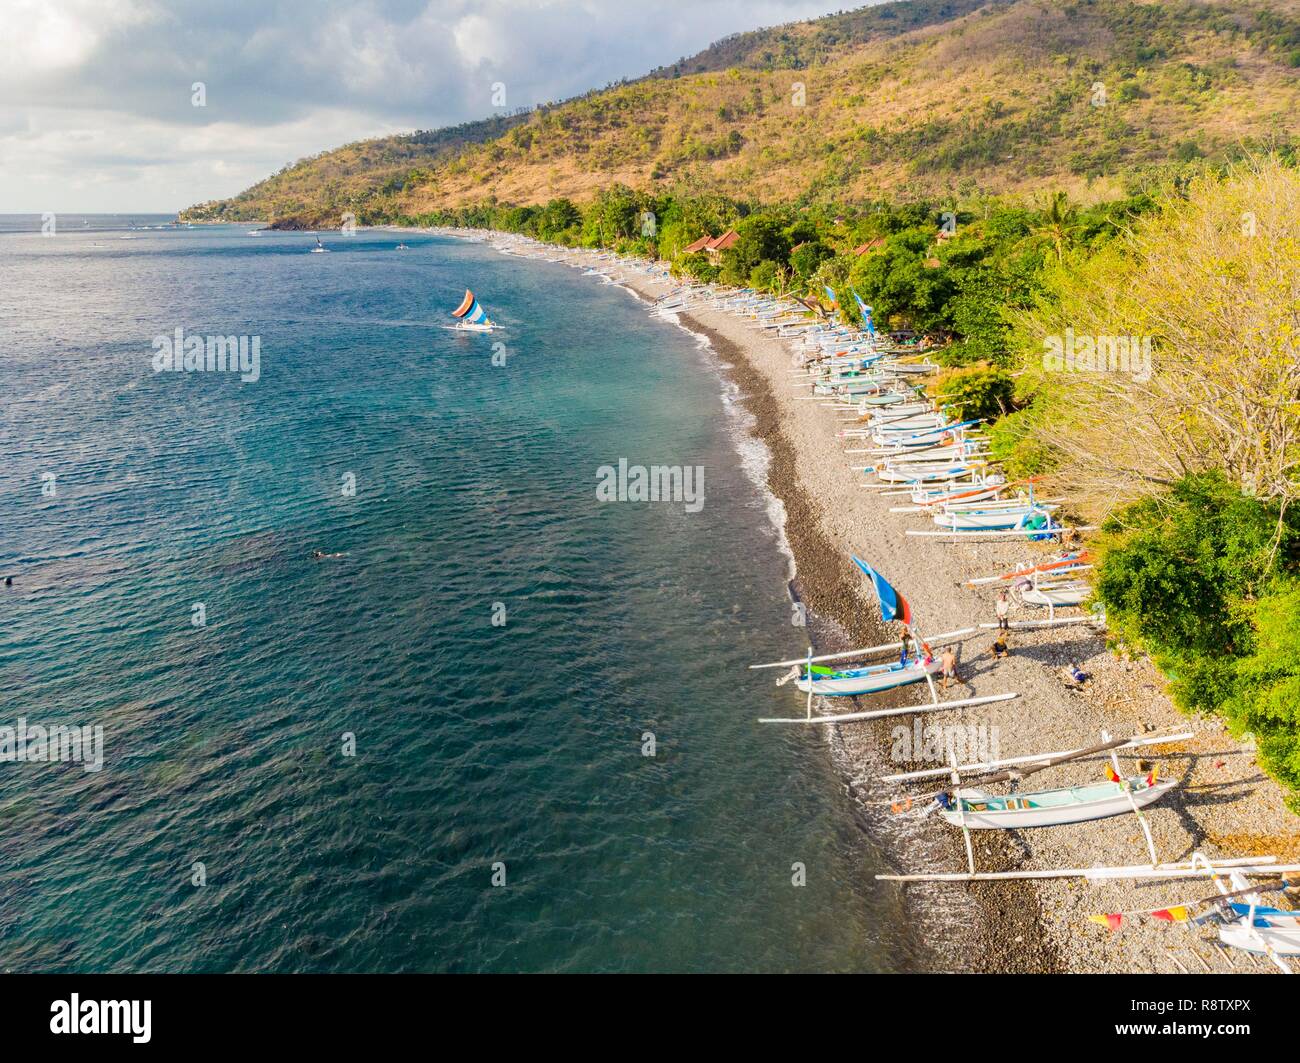 L'Indonésie, à l'Est de Bali, Amed Amlapura, Côte, plage Selang ou plage de sable blanc, les bateaux de pêche traditionnels ou Jukungs (vue aérienne) Banque D'Images